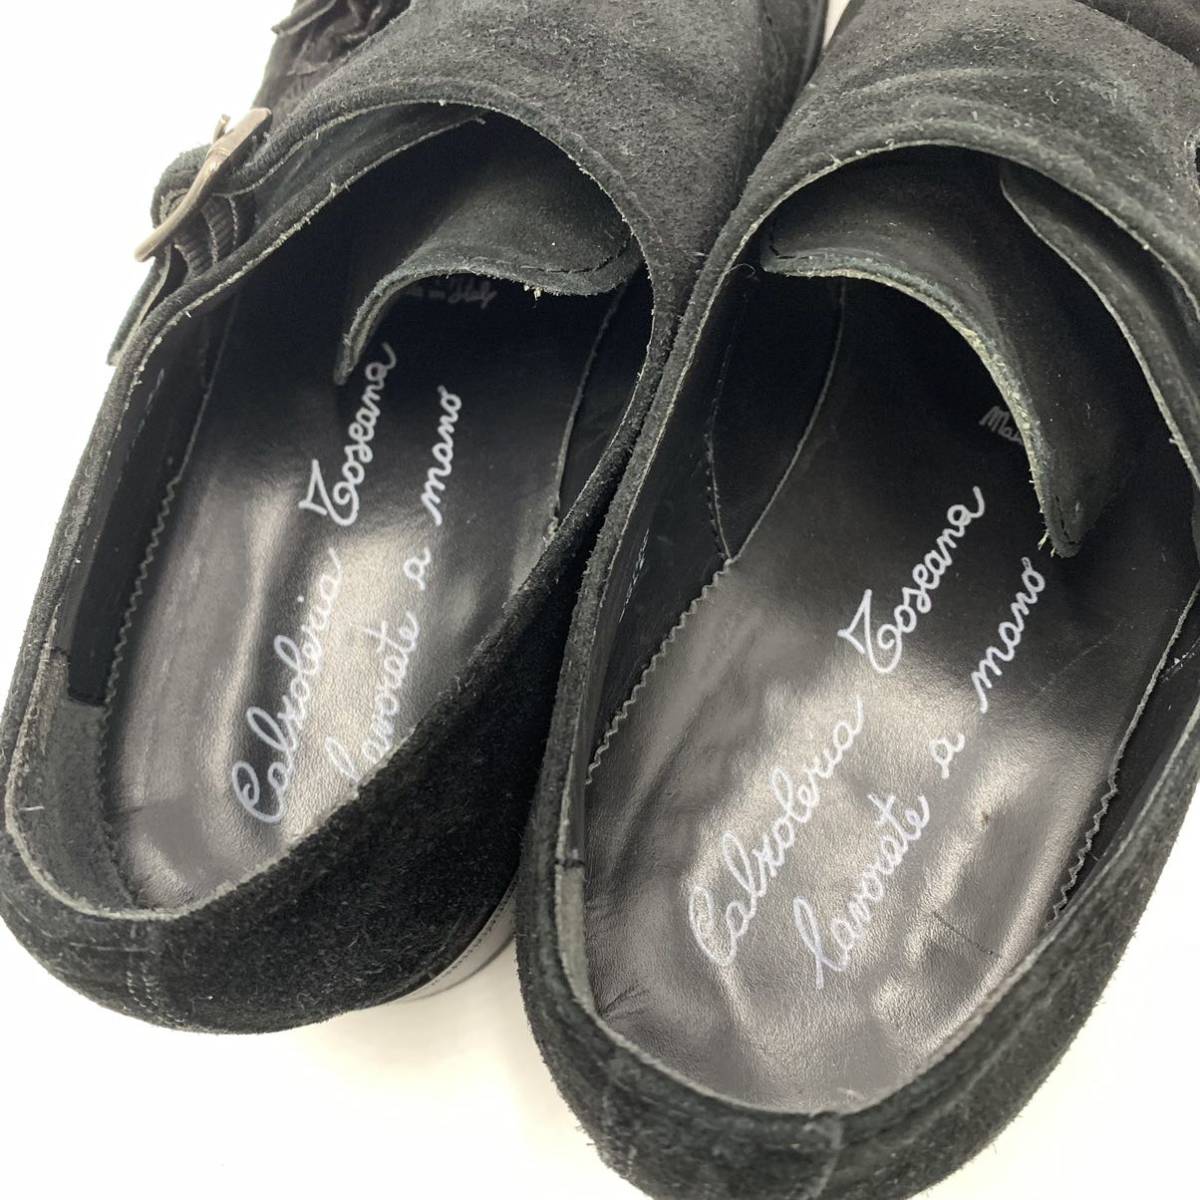 E☆良品/ ダブルモンクストラップ 'イタリア製' LAVORATE A MANO ラボレートアマーノ製法 スエードレザー ビジネスシューズ 革靴 40 紳士靴_画像9